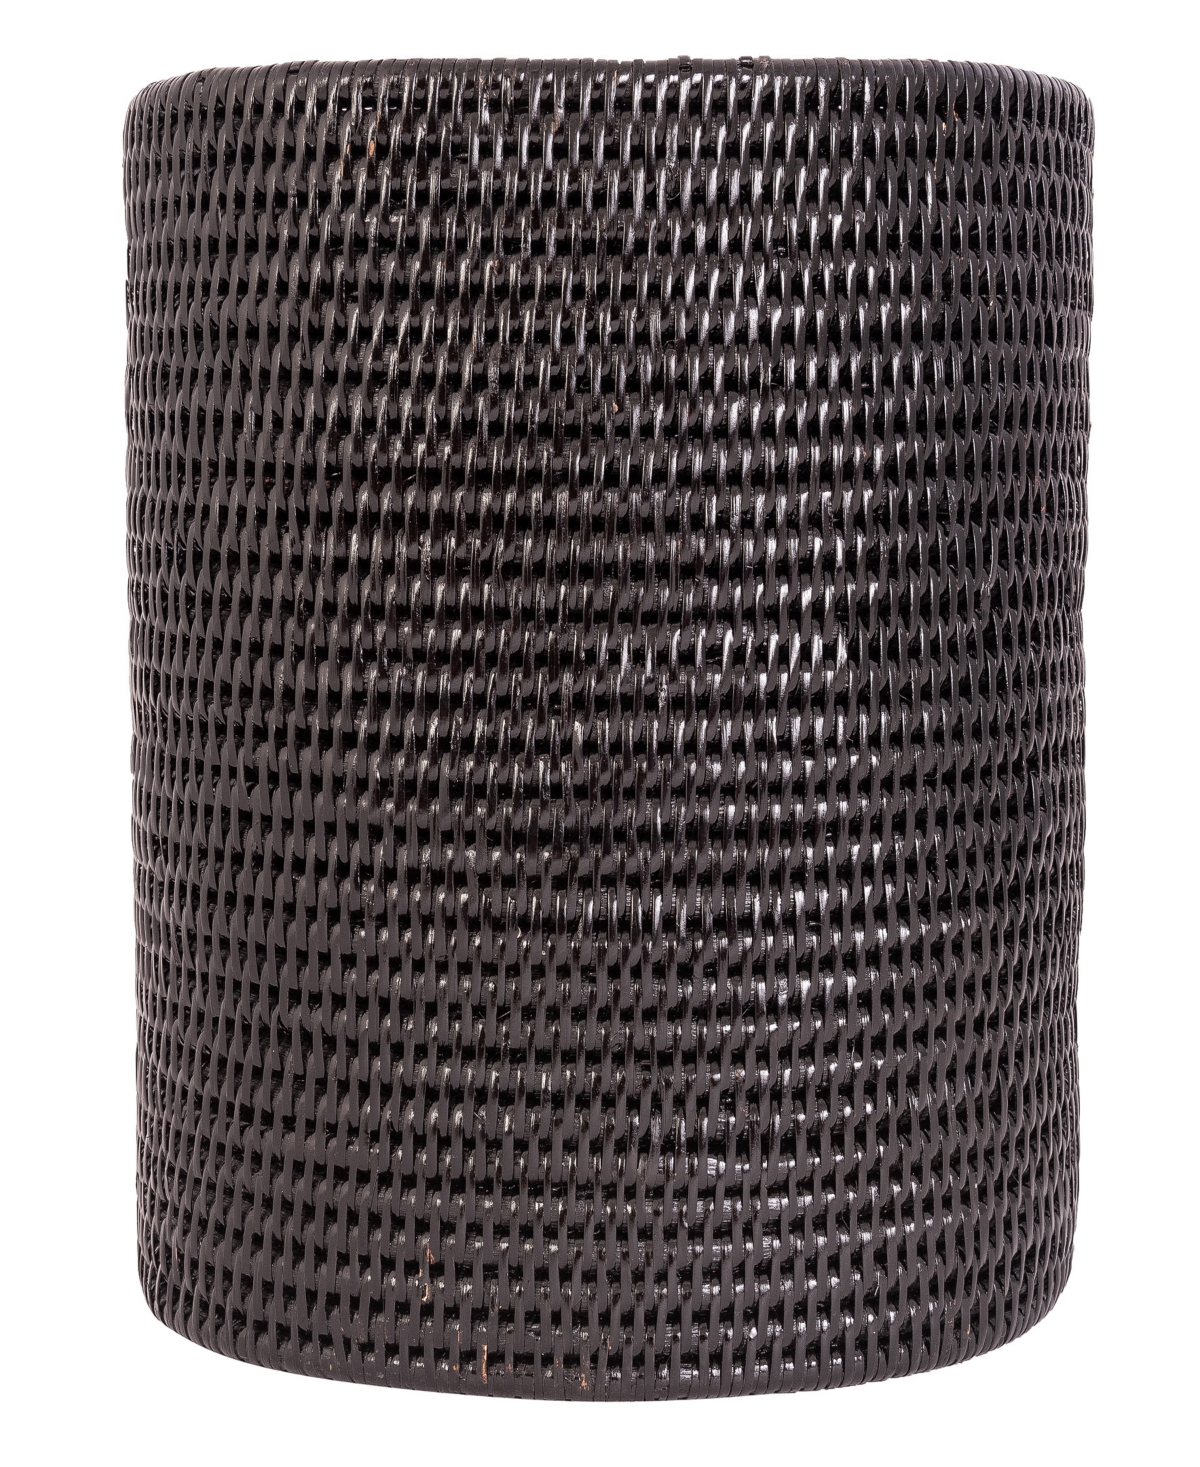 Rattan Oval Waste Basket with Metal Liner - Tudor Black